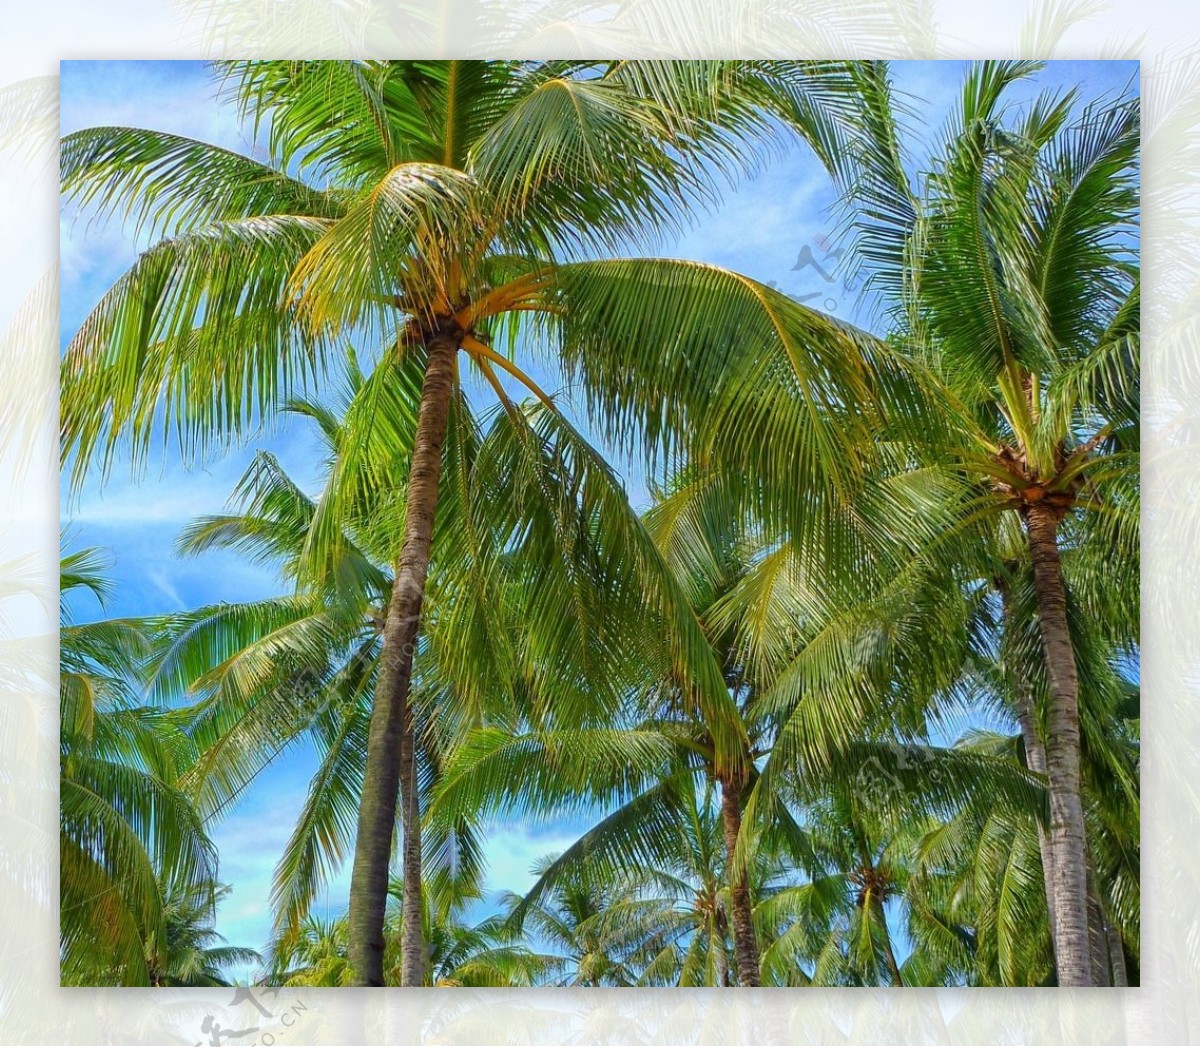 高大的椰子树